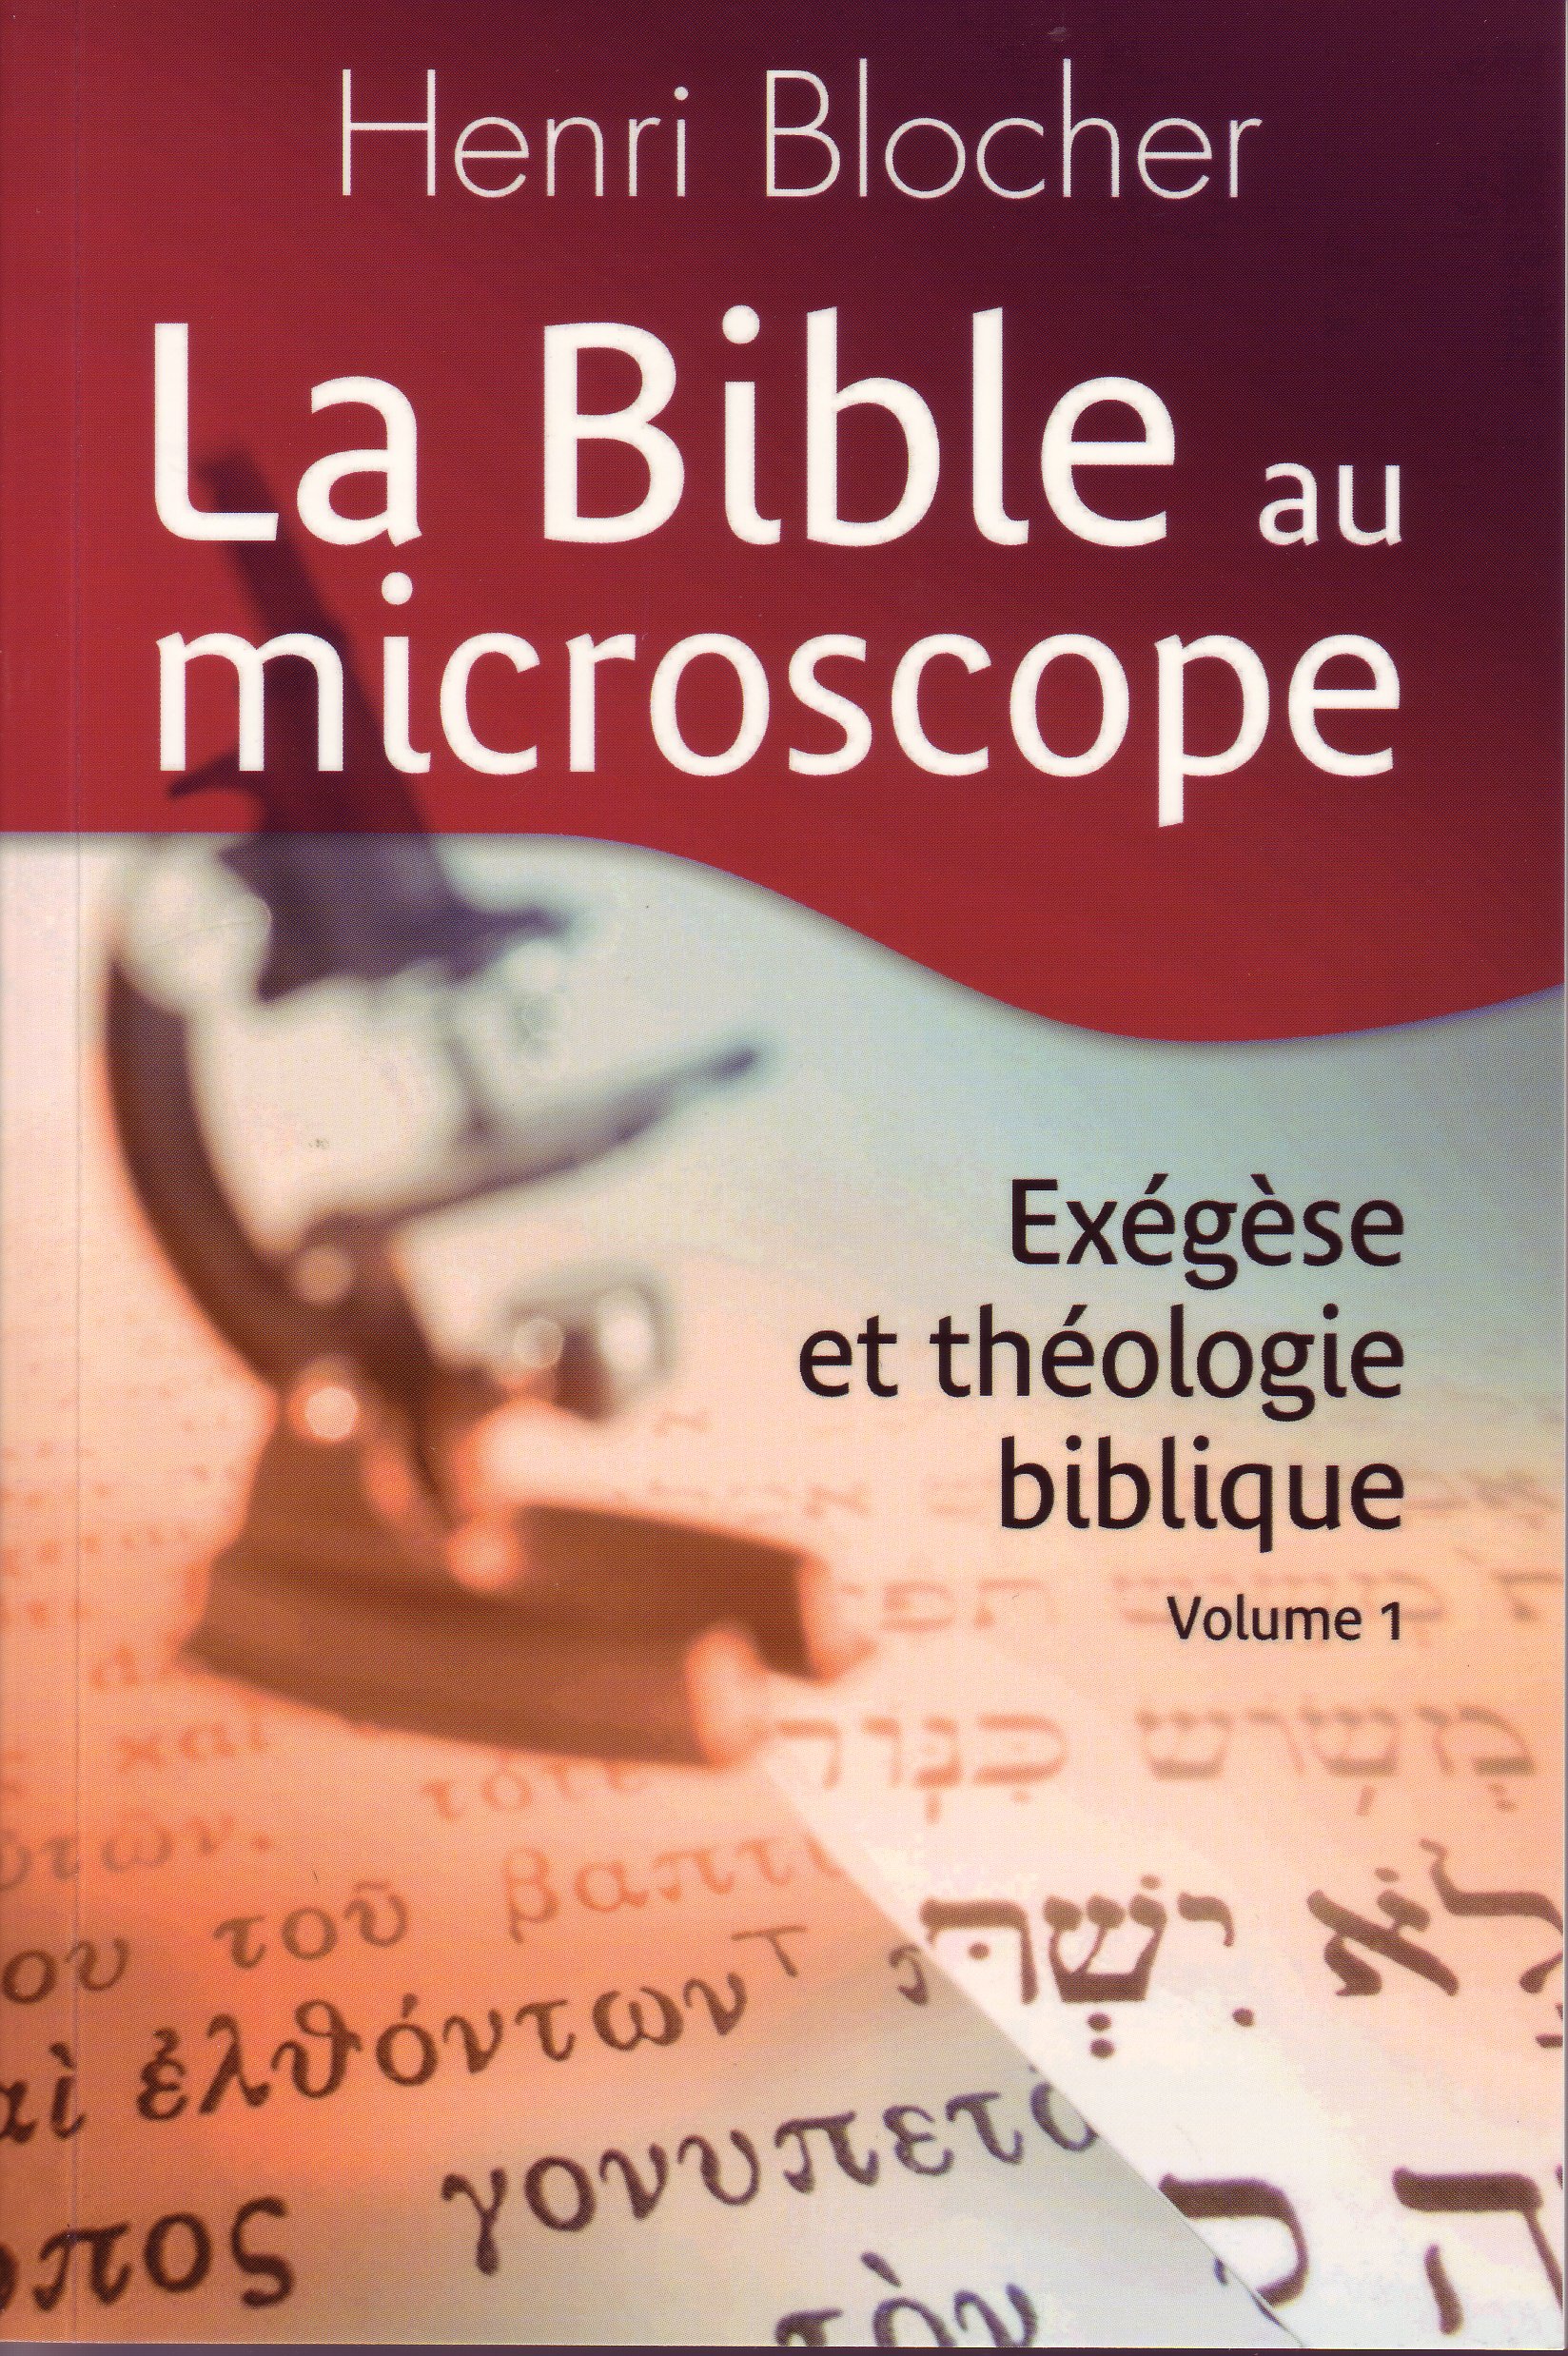 Bible au microscope, volume 1 (La) - Exégèse et théologie biblique